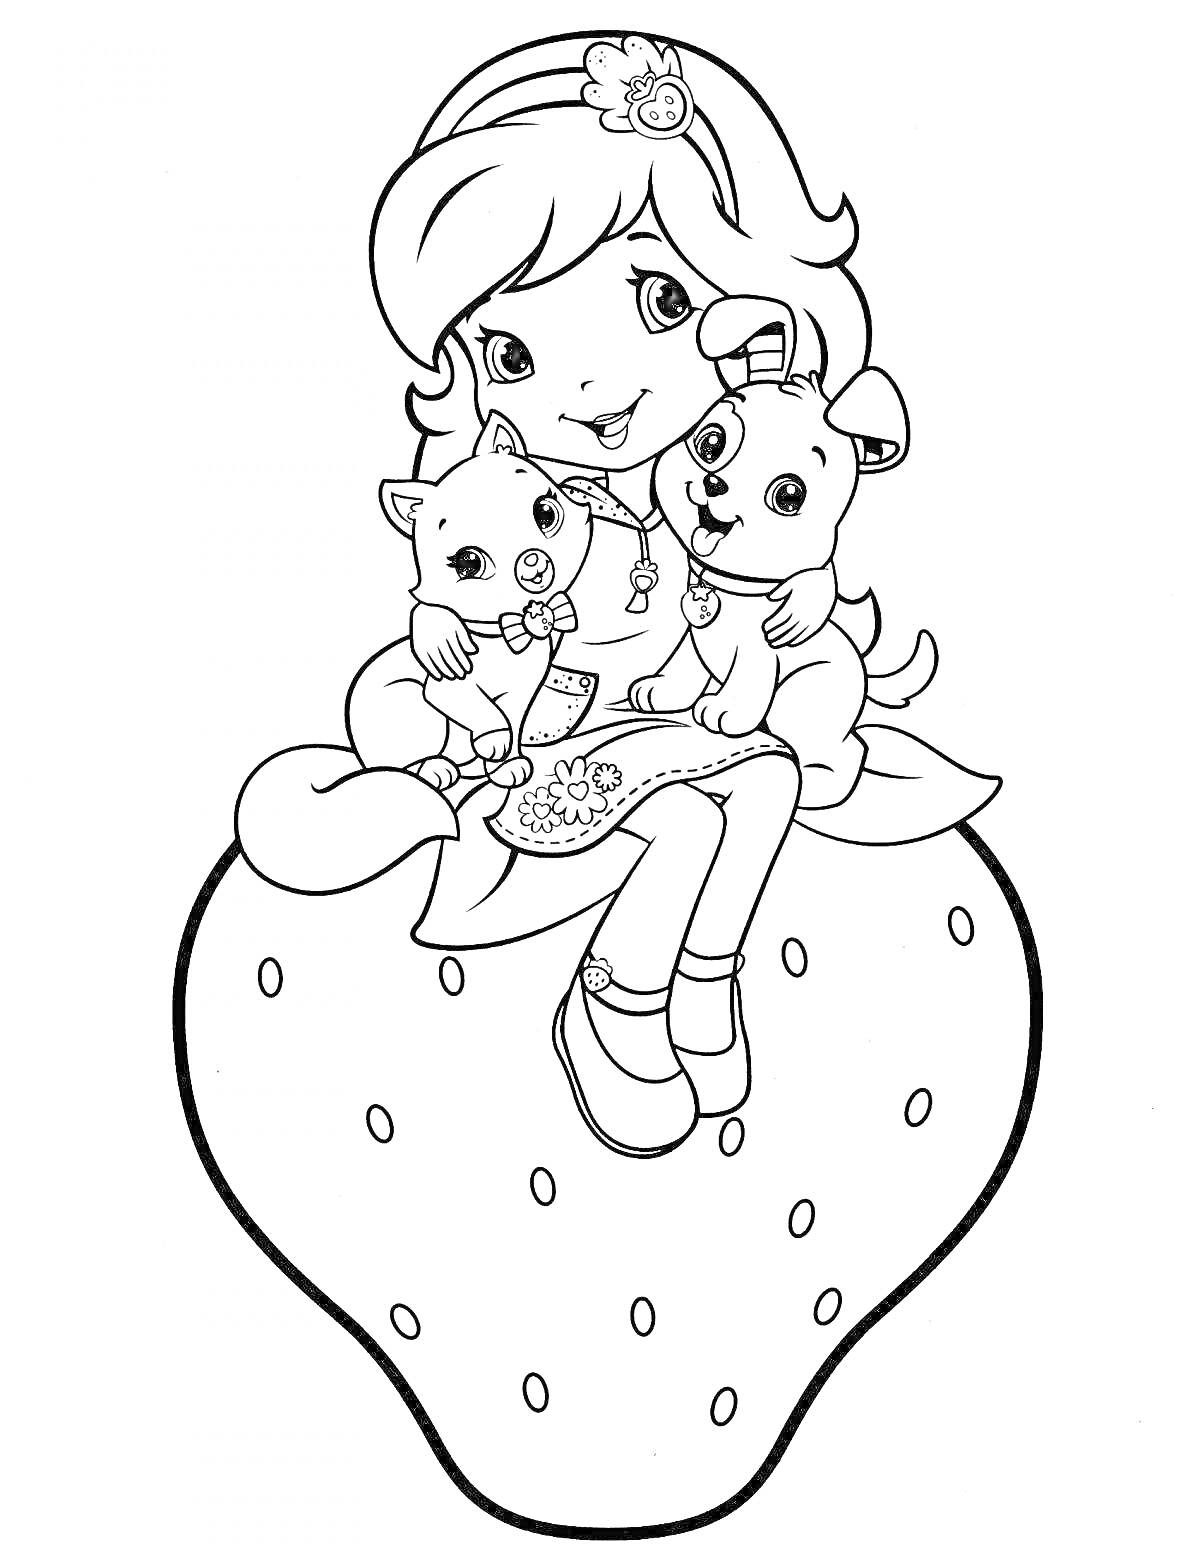 Раскраска Девочка с бантиком, сидящая на клубнике с кошкой и щенком на руках